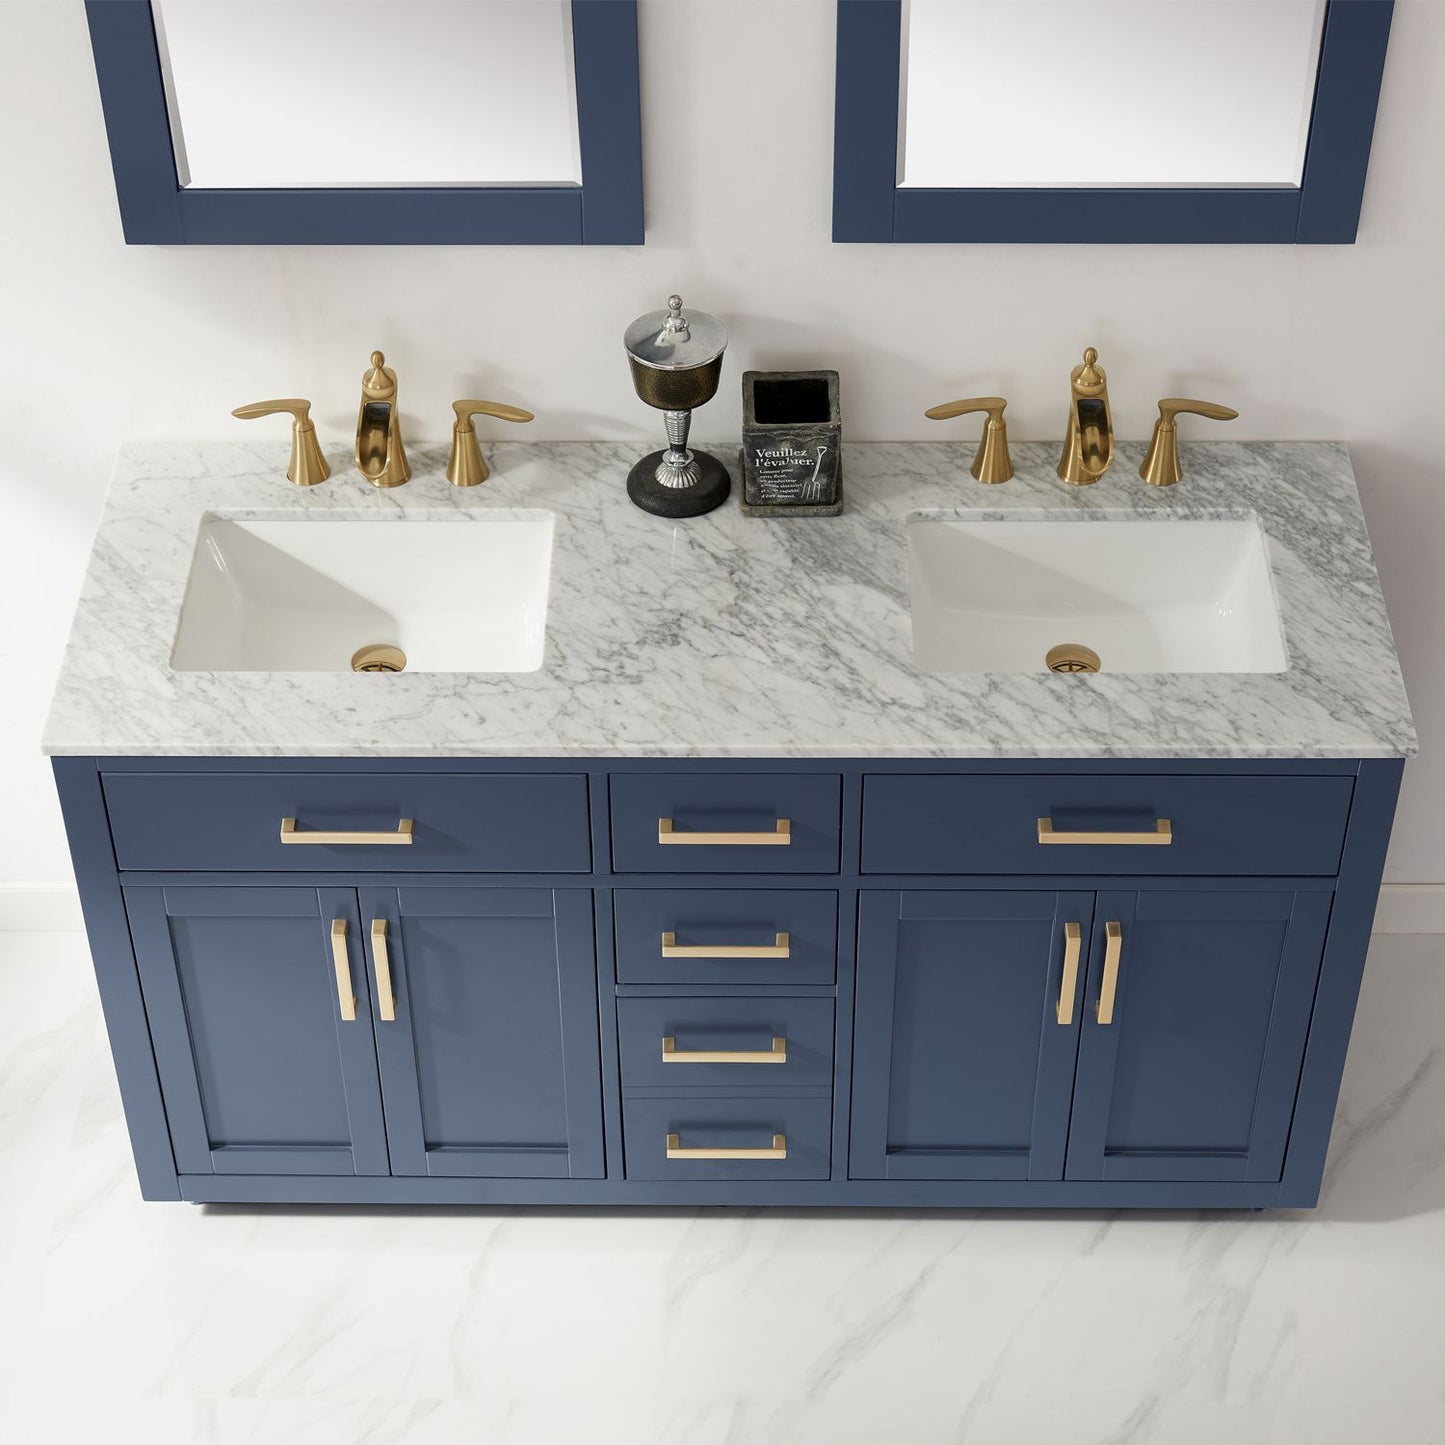 Altair Ivy 60" Double Bathroom Vanity Set Countertop with Mirror - Luxe Bathroom Vanities